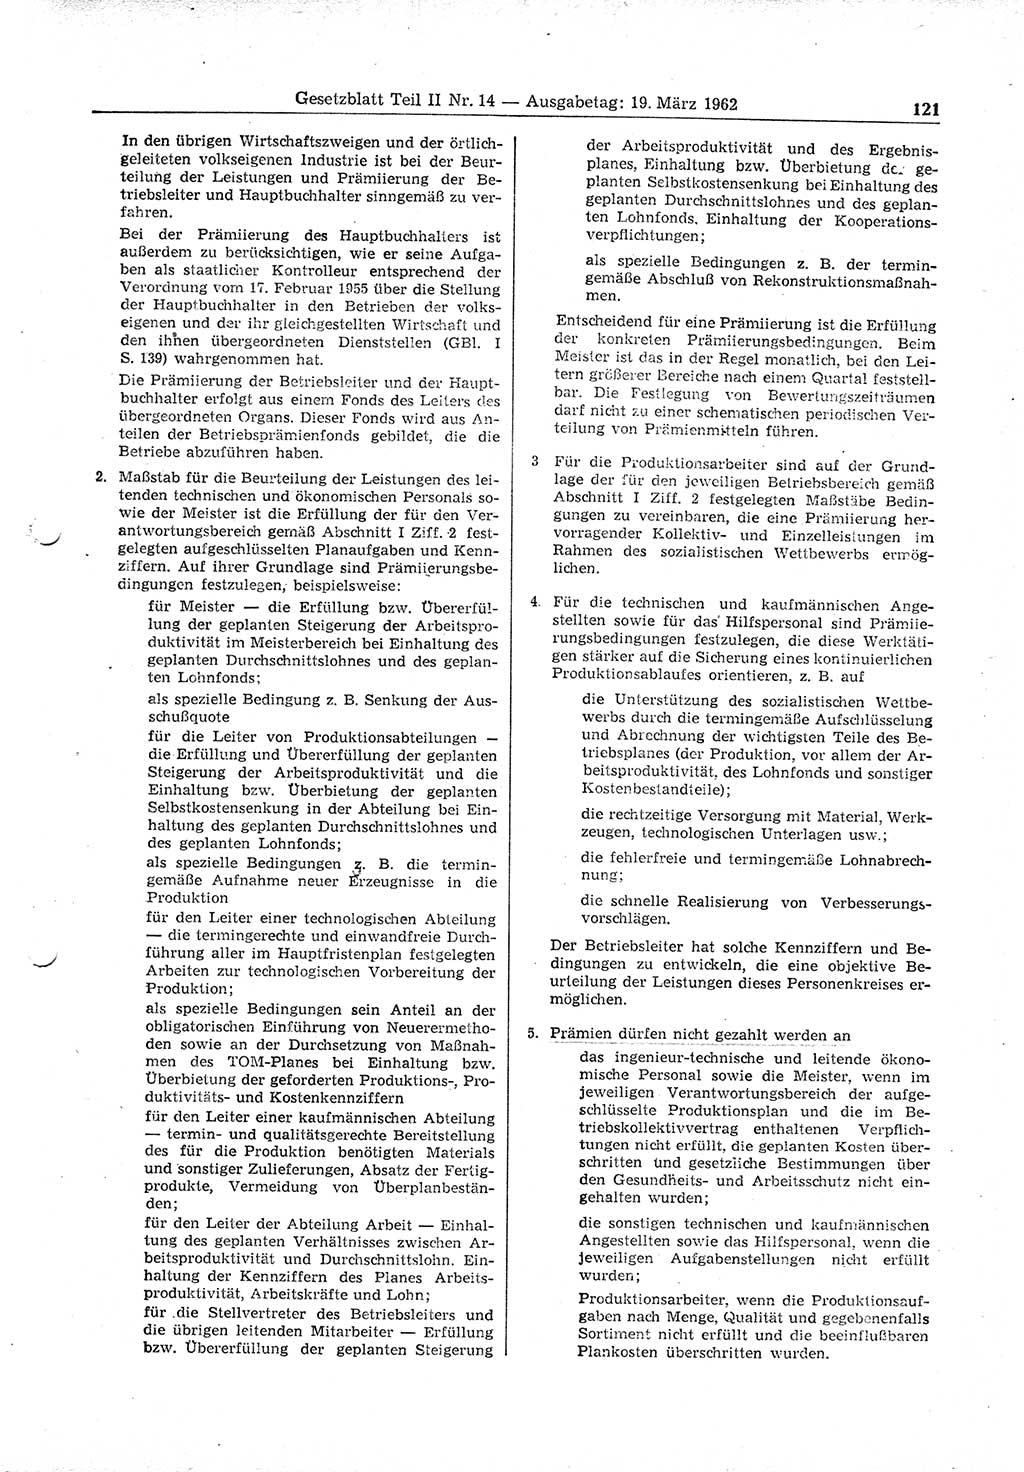 Gesetzblatt (GBl.) der Deutschen Demokratischen Republik (DDR) Teil ⅠⅠ 1962, Seite 121 (GBl. DDR ⅠⅠ 1962, S. 121)